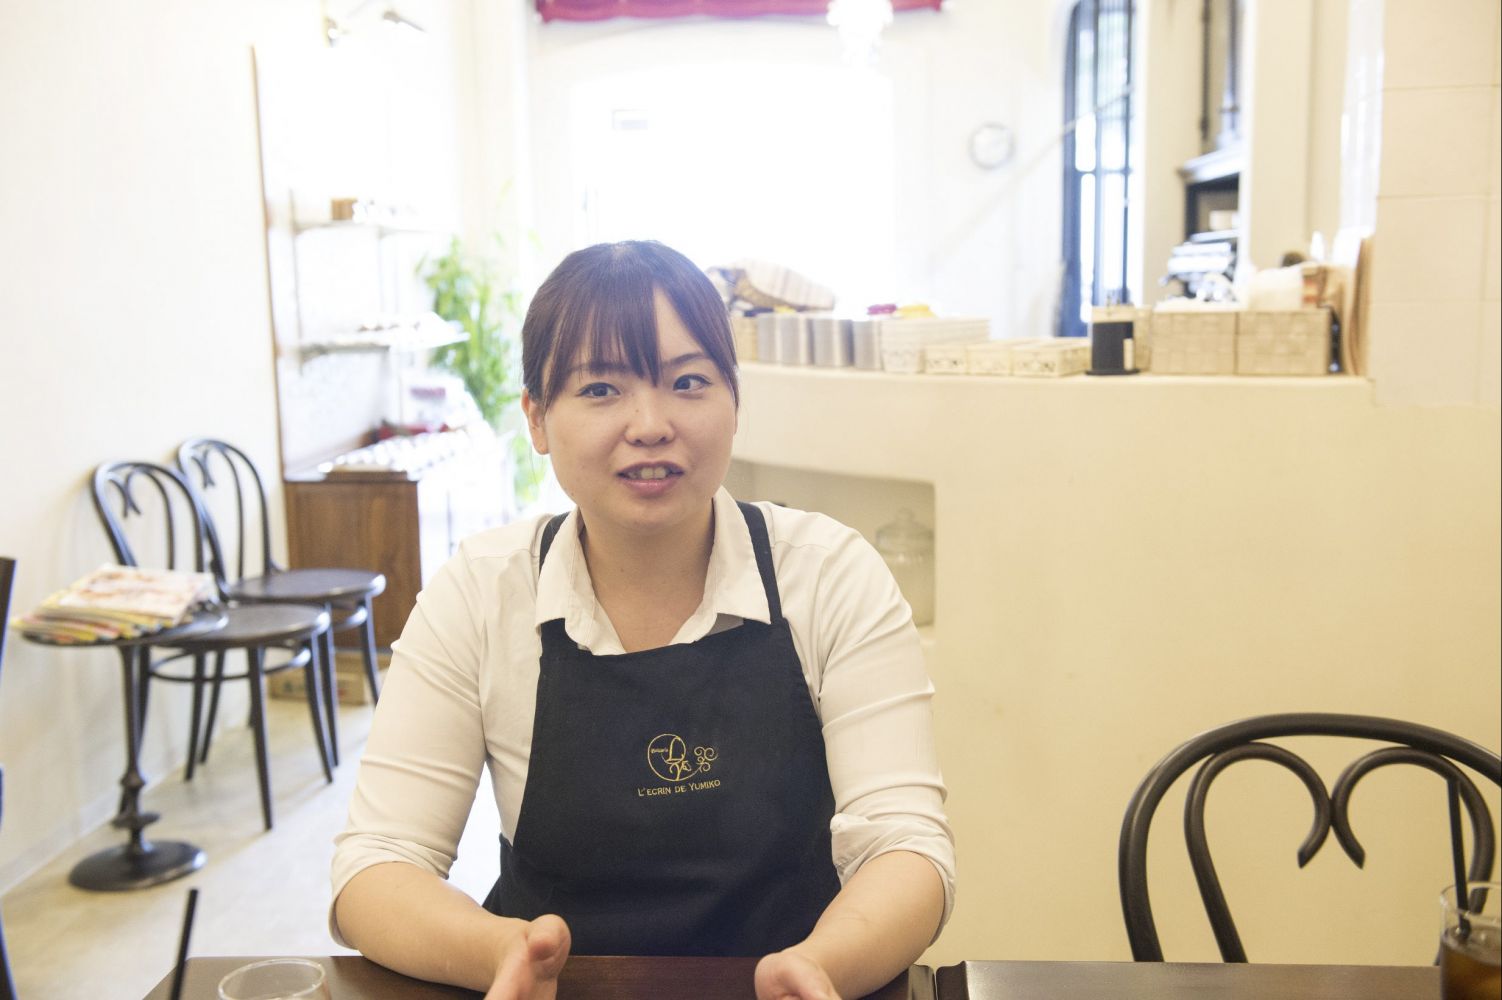 レクラン ド ユミコ オーナーシェフパティシエ 岸裕美子さん 夢を諦めず菓子店の女性オーナーに 料理を作るからはじまる100人の仕事 Professions Of Food And プロフェッションズ